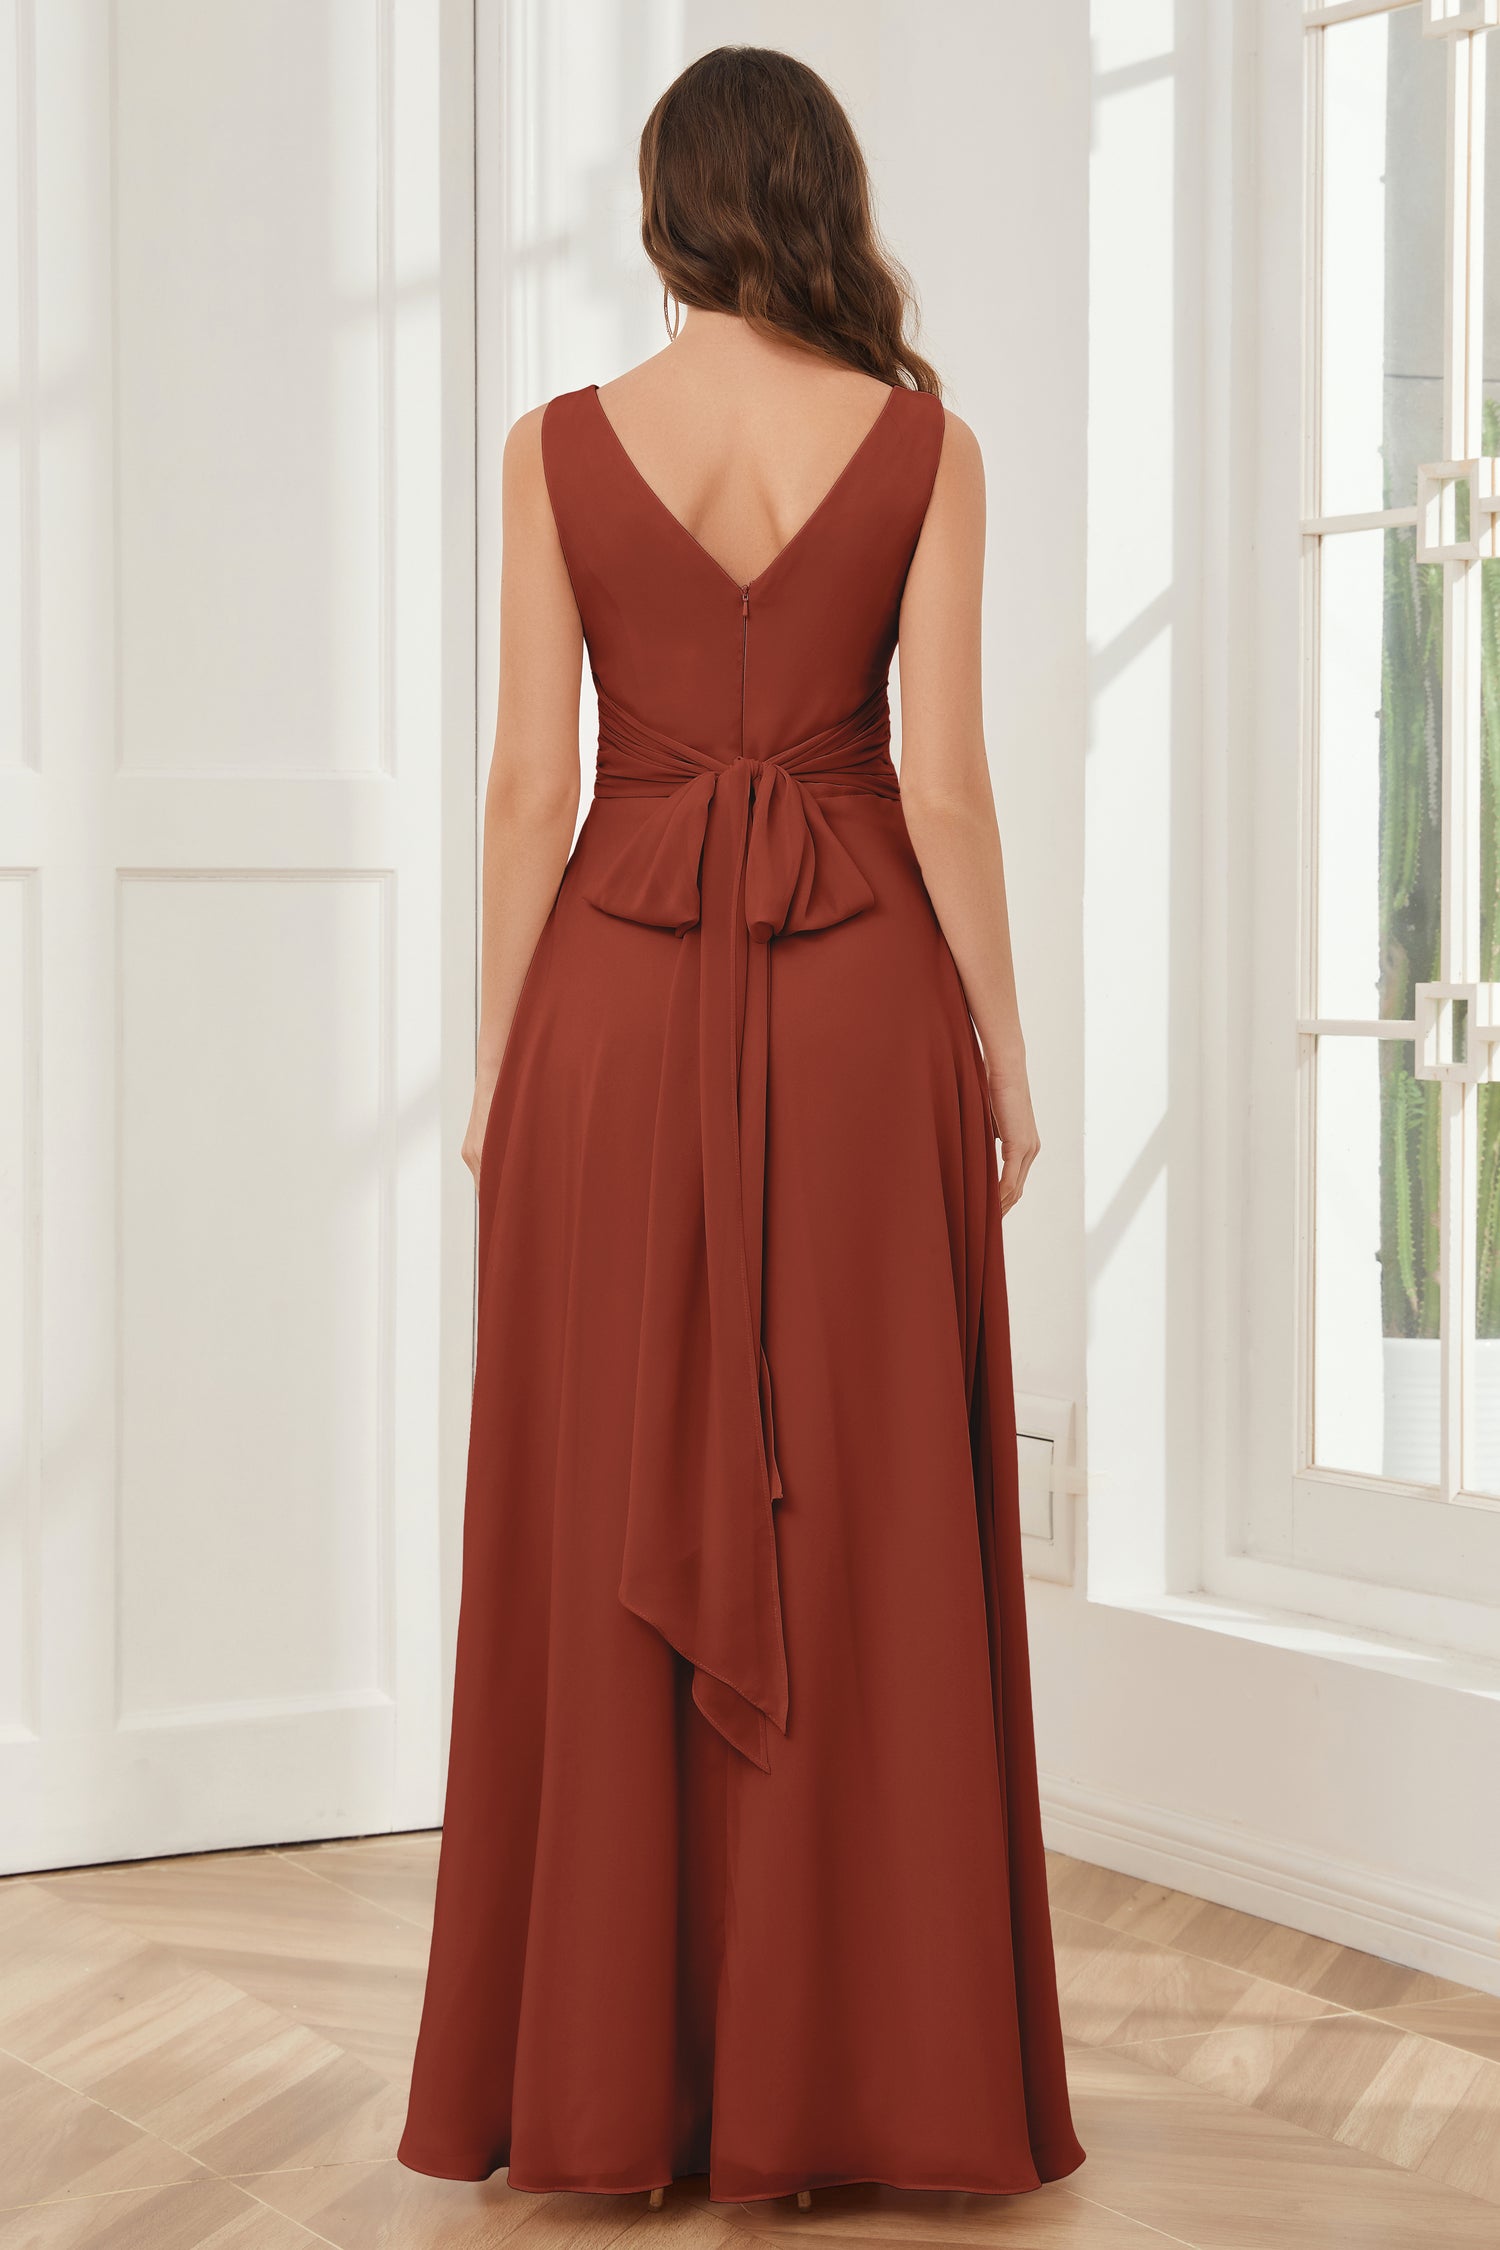 pretty rust color | Dresses | Pinterest | Rust color dress, Rust bridesmaid  dress, Maxi dress evening